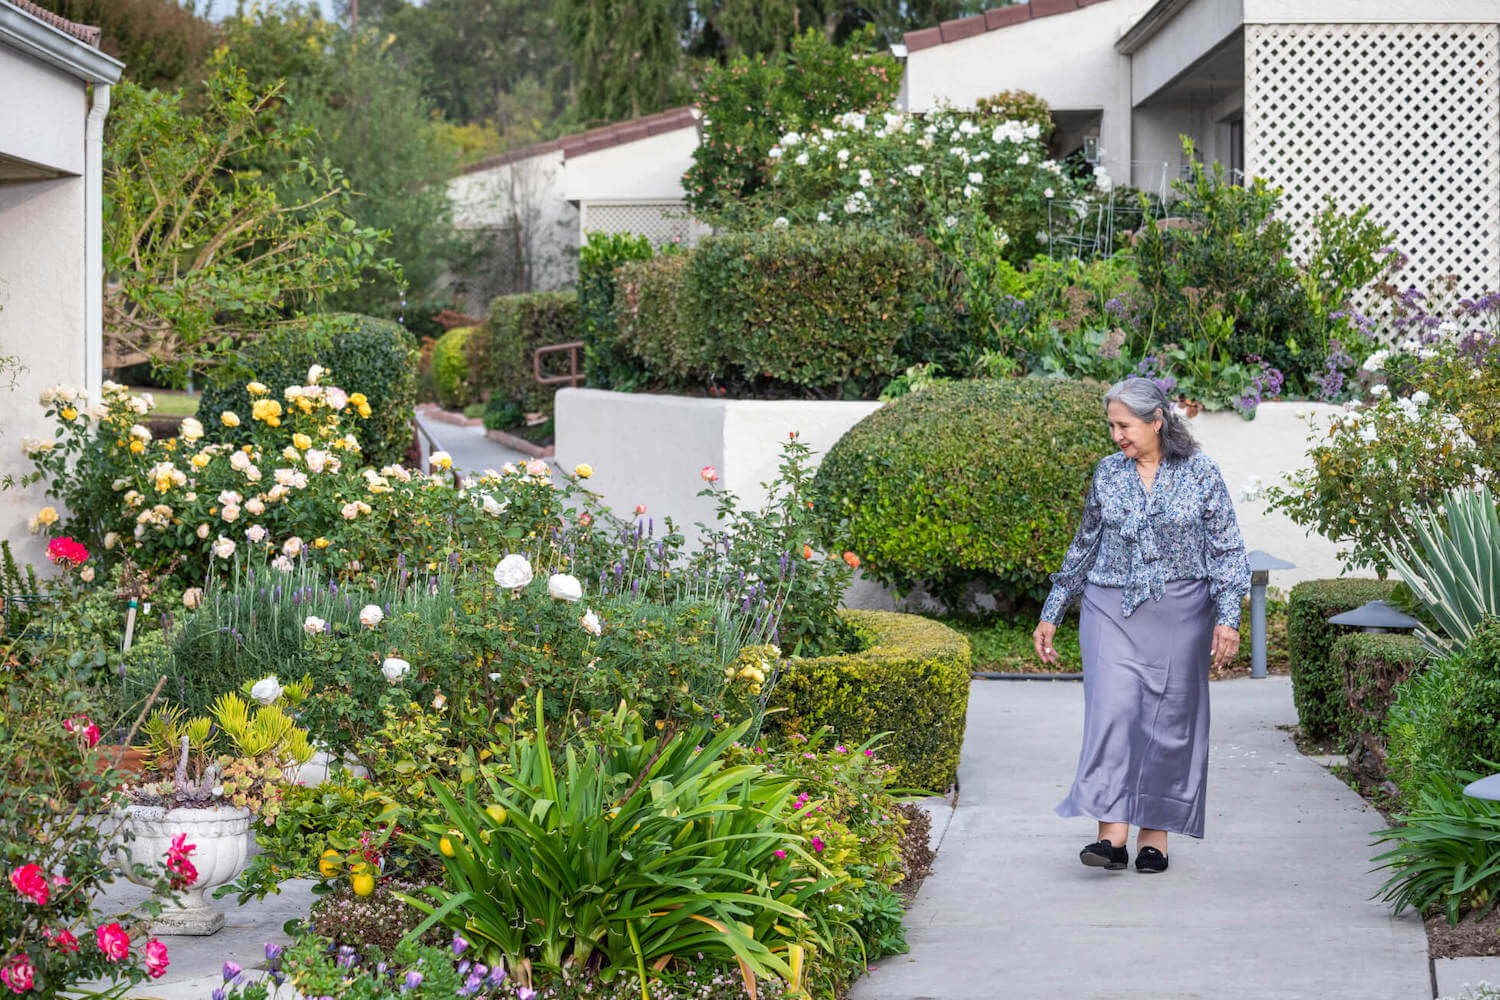 Senior woman walking through outdoor garden